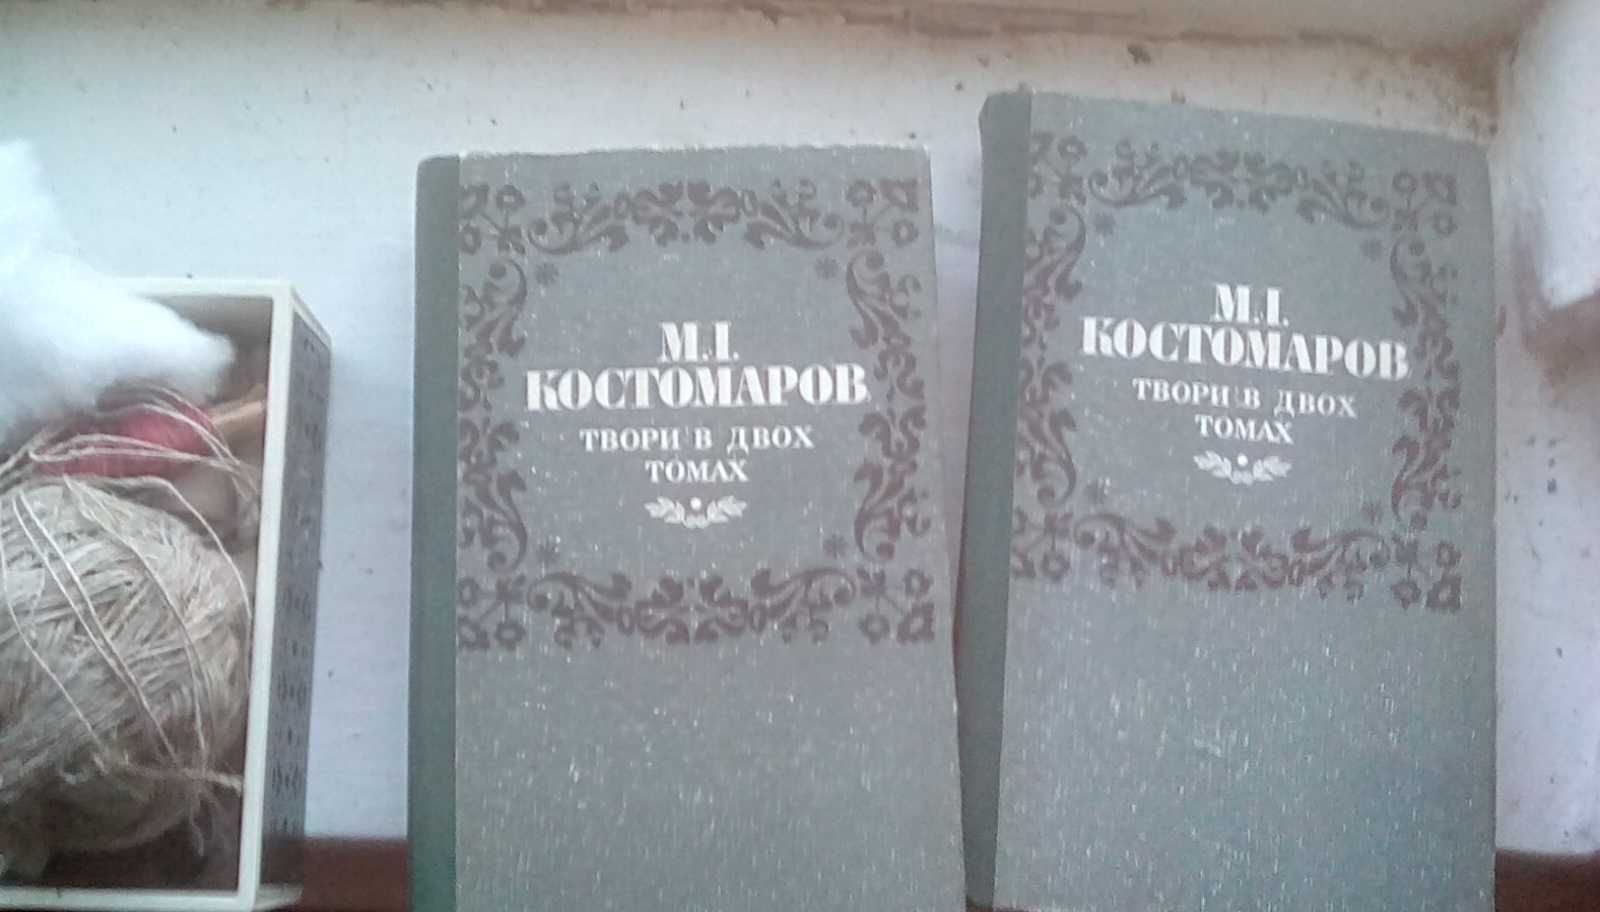 Книги з украінськоі літератури